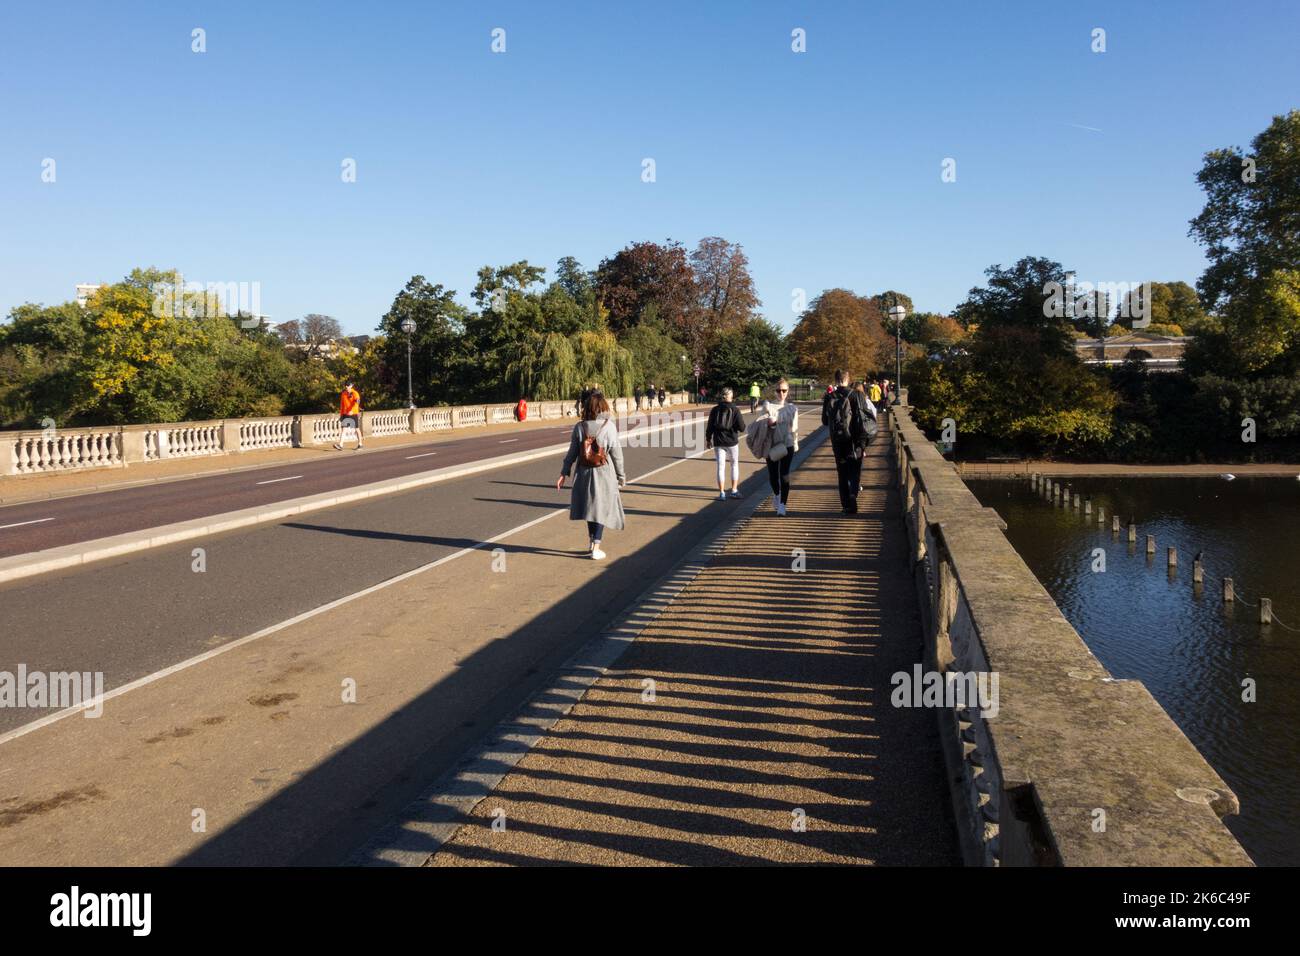 Les gens qui traversent le pont Serpentine de John Rennie qui sépare Hyde Park et Kensington Gardens, le Serpentine, Londres, Angleterre, Royaume-Uni Banque D'Images